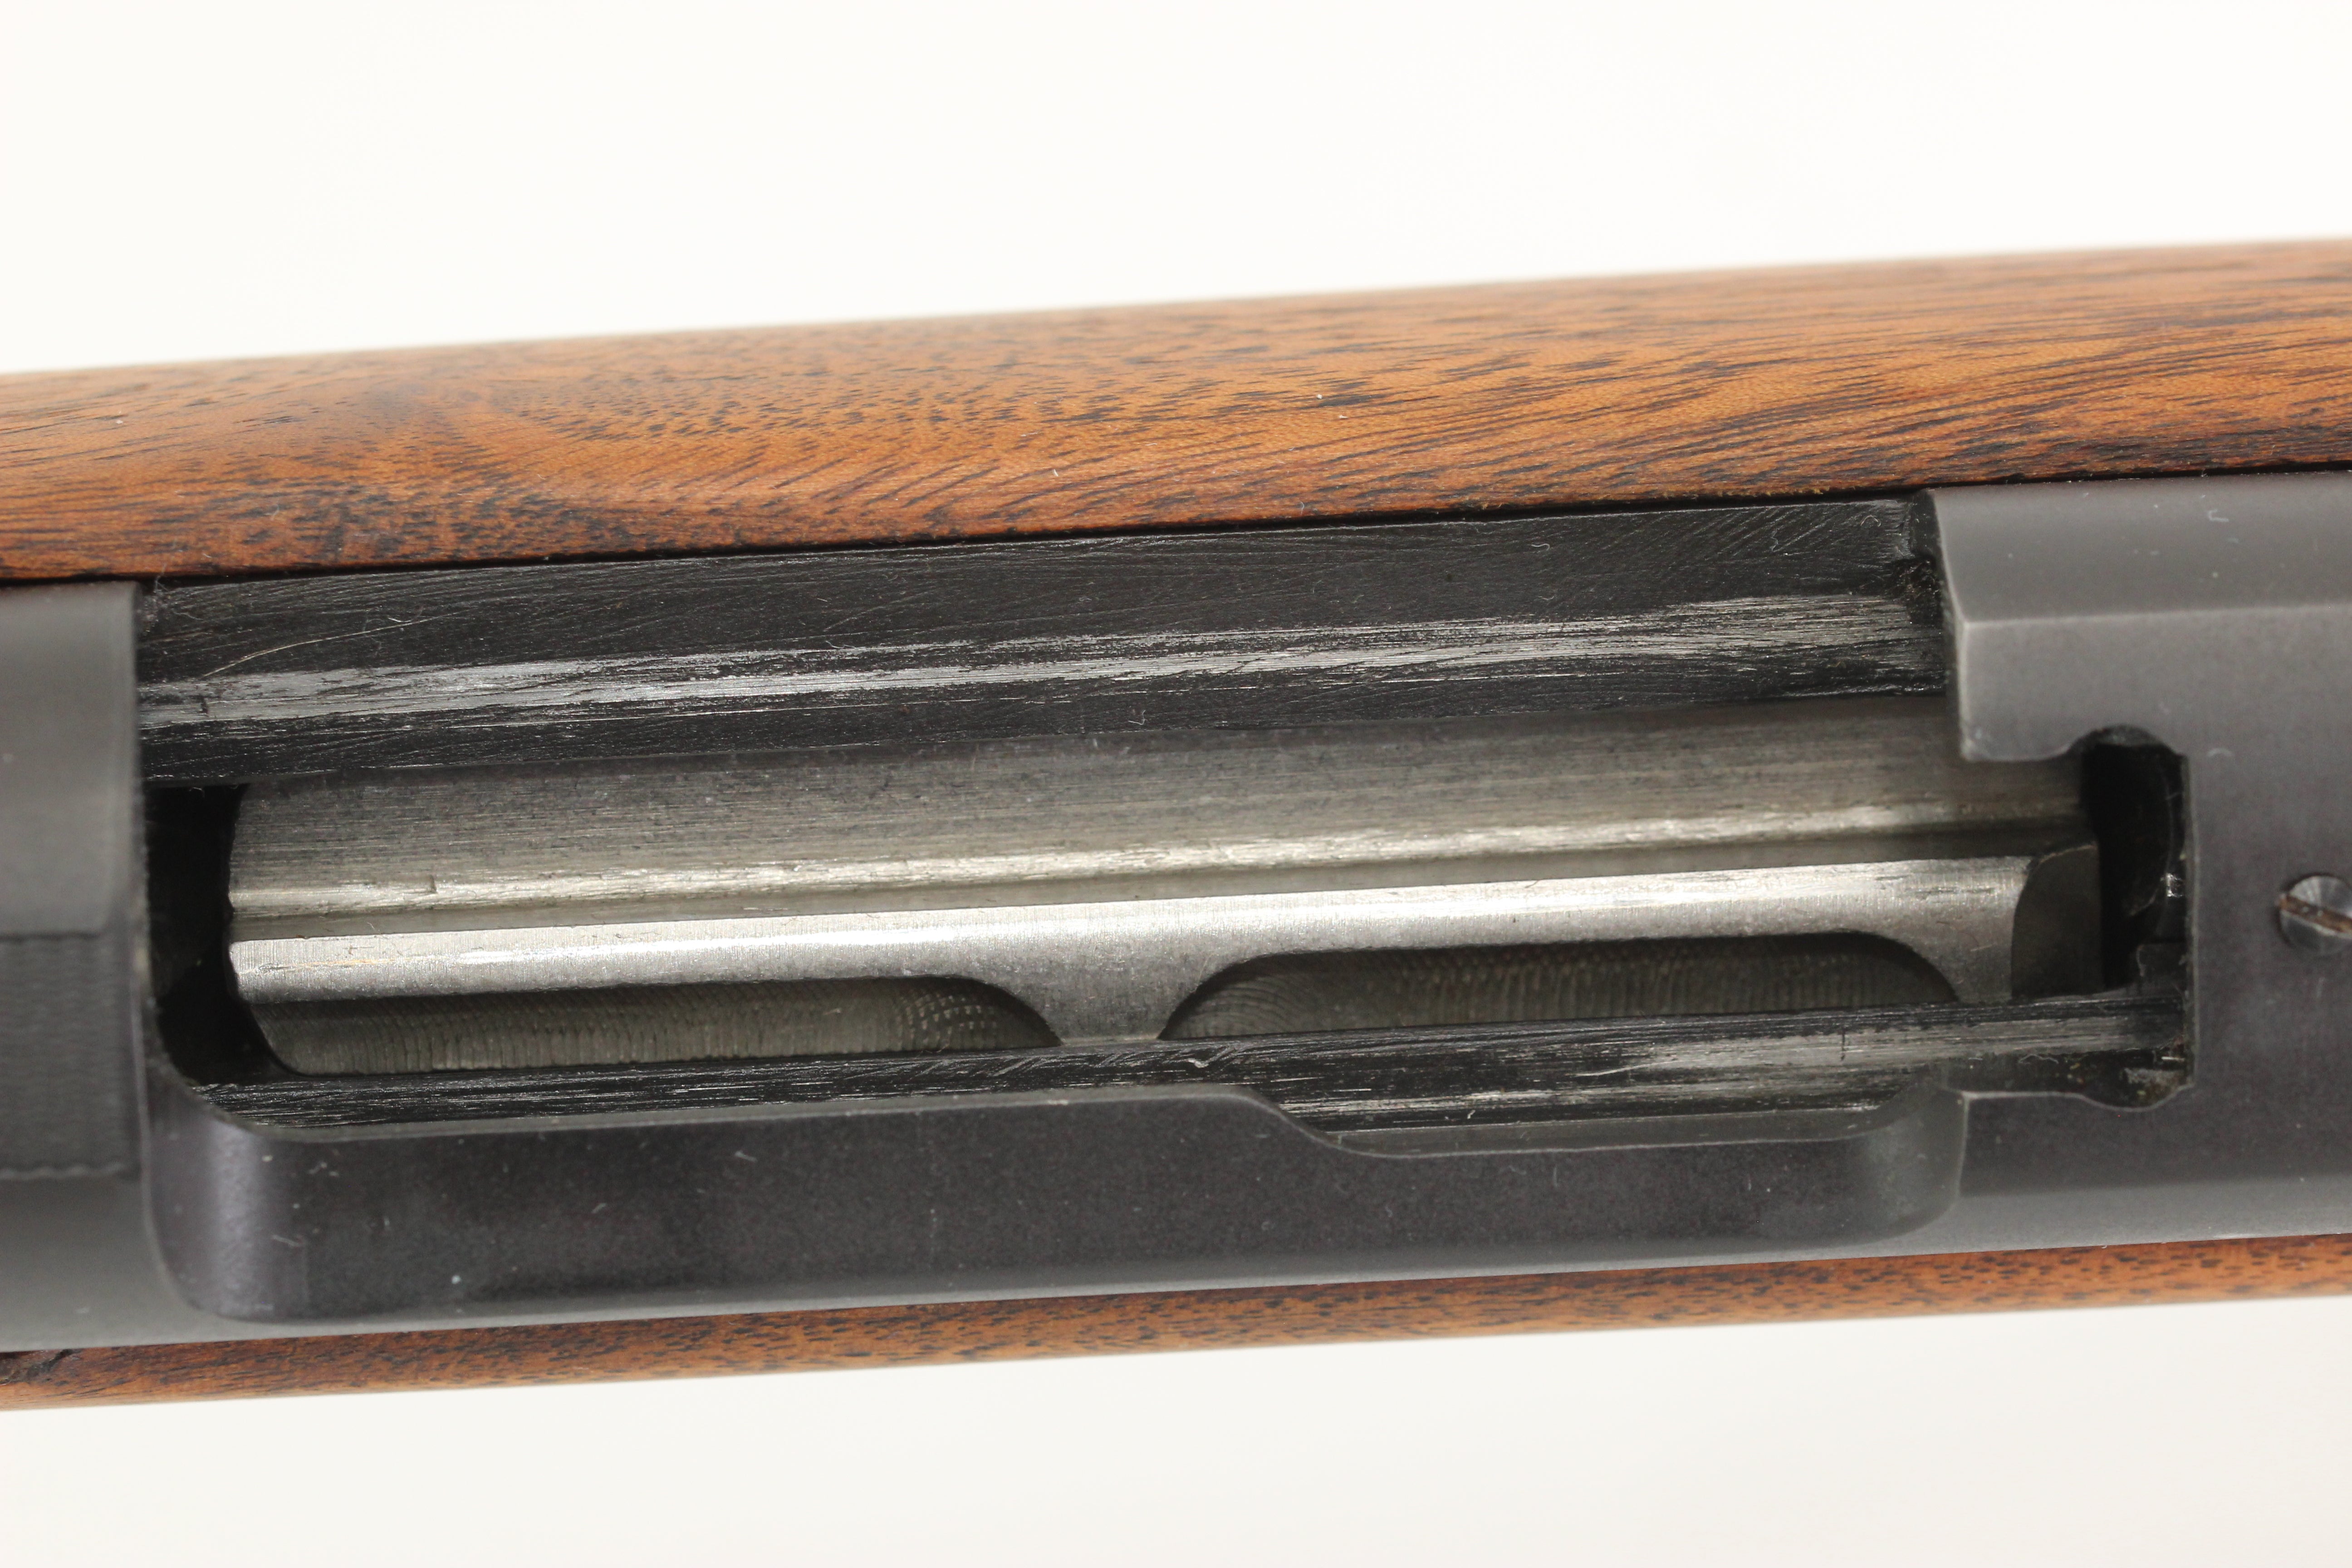 .30-06 Van Orden Sniper Rifle - 1953